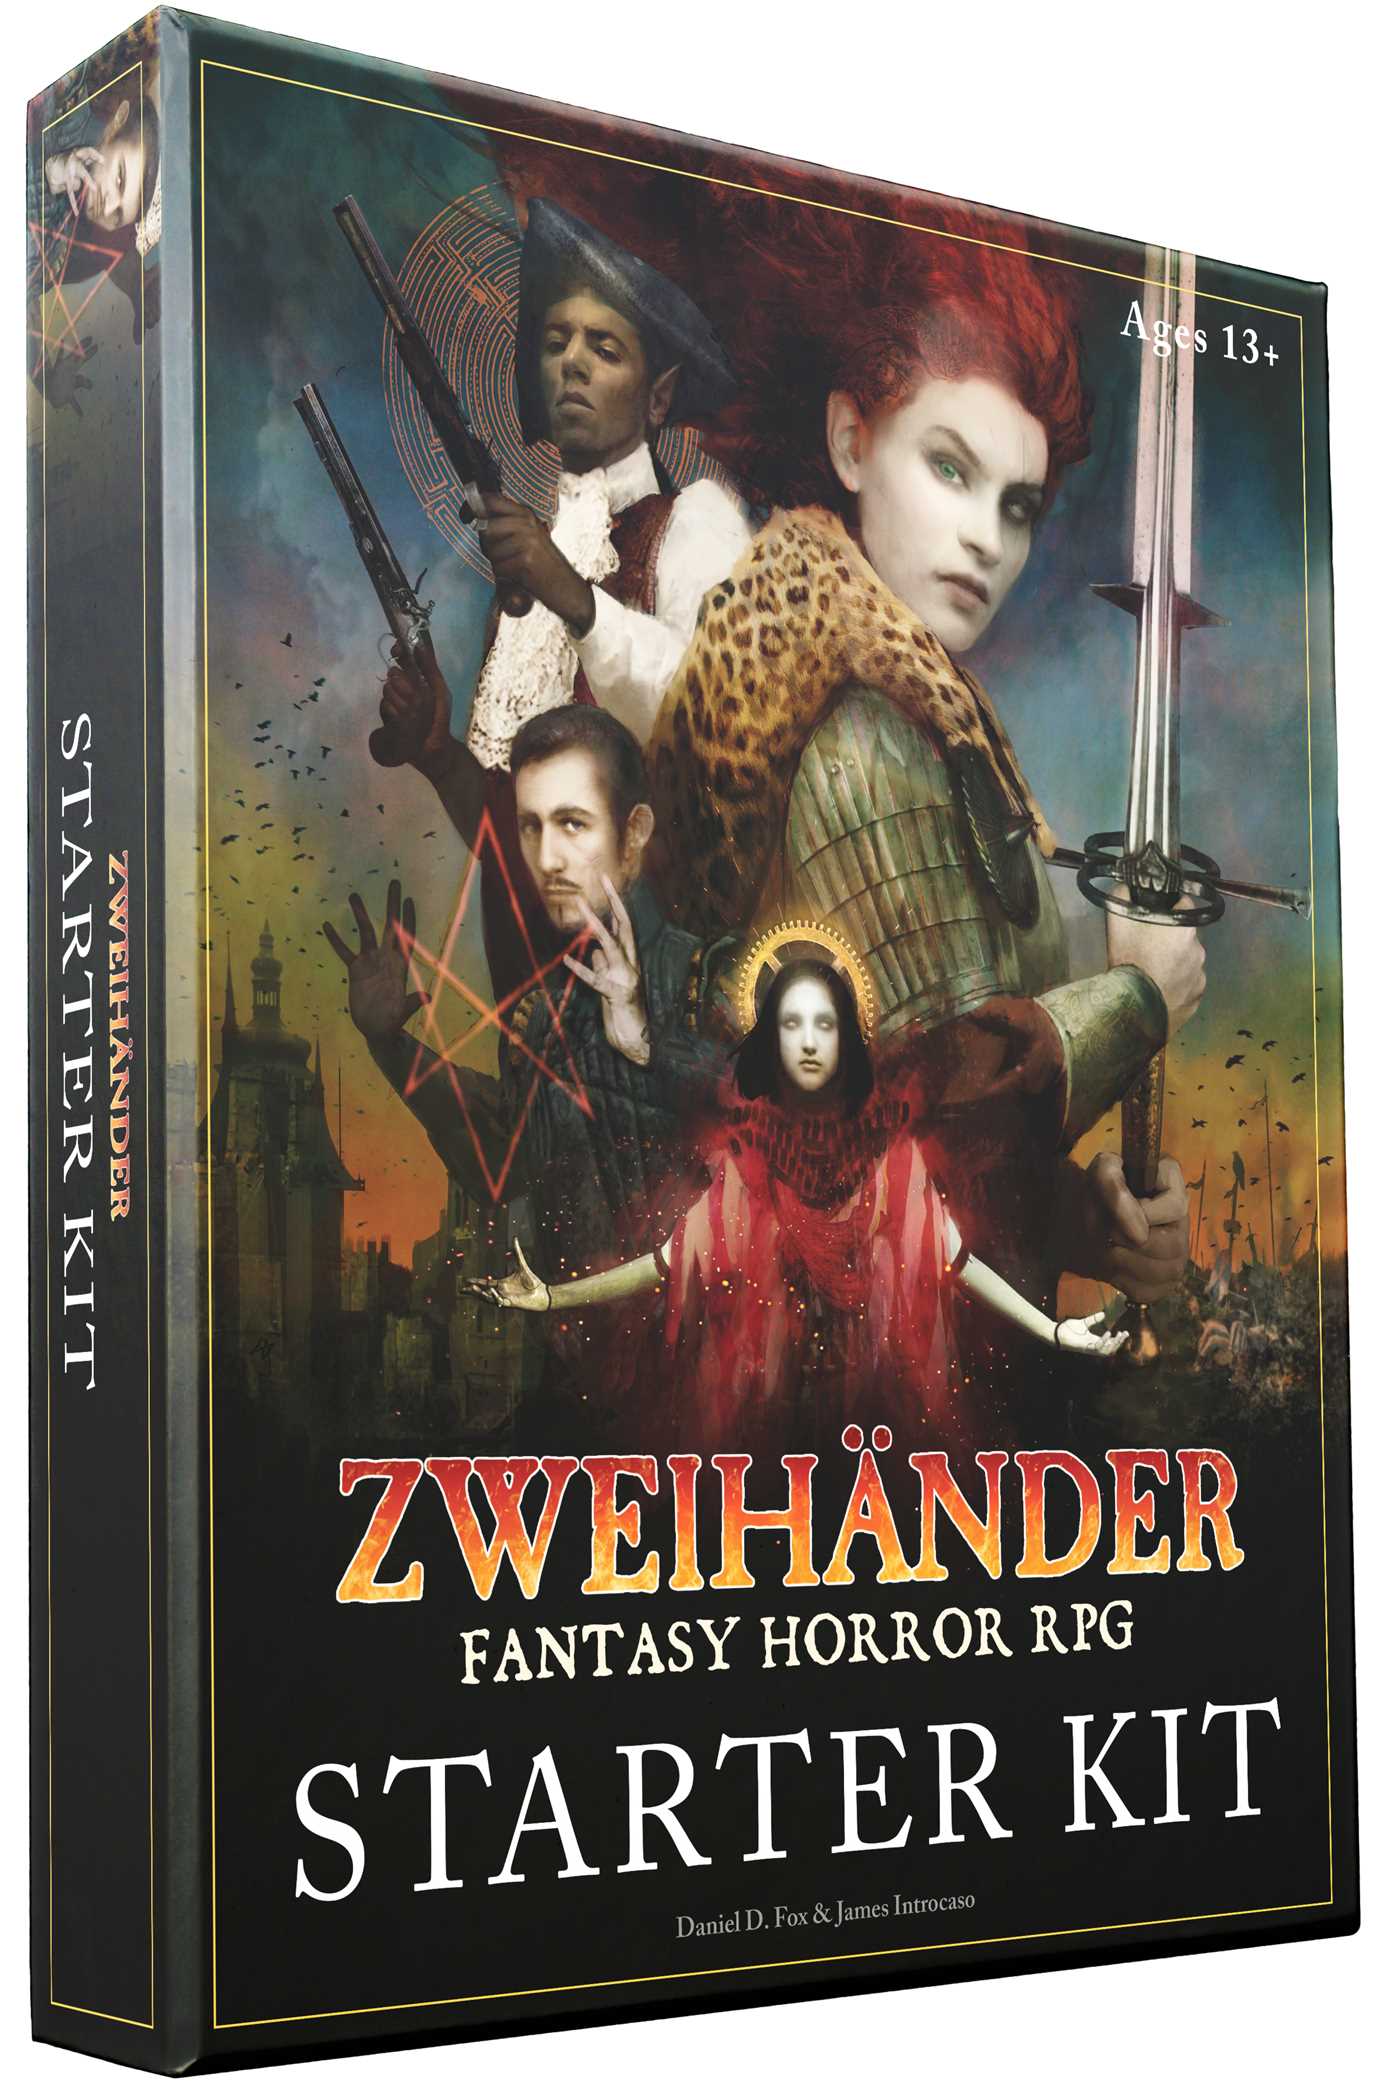 The fantasy horror box art for the ZWEIHÄNDER starter kit